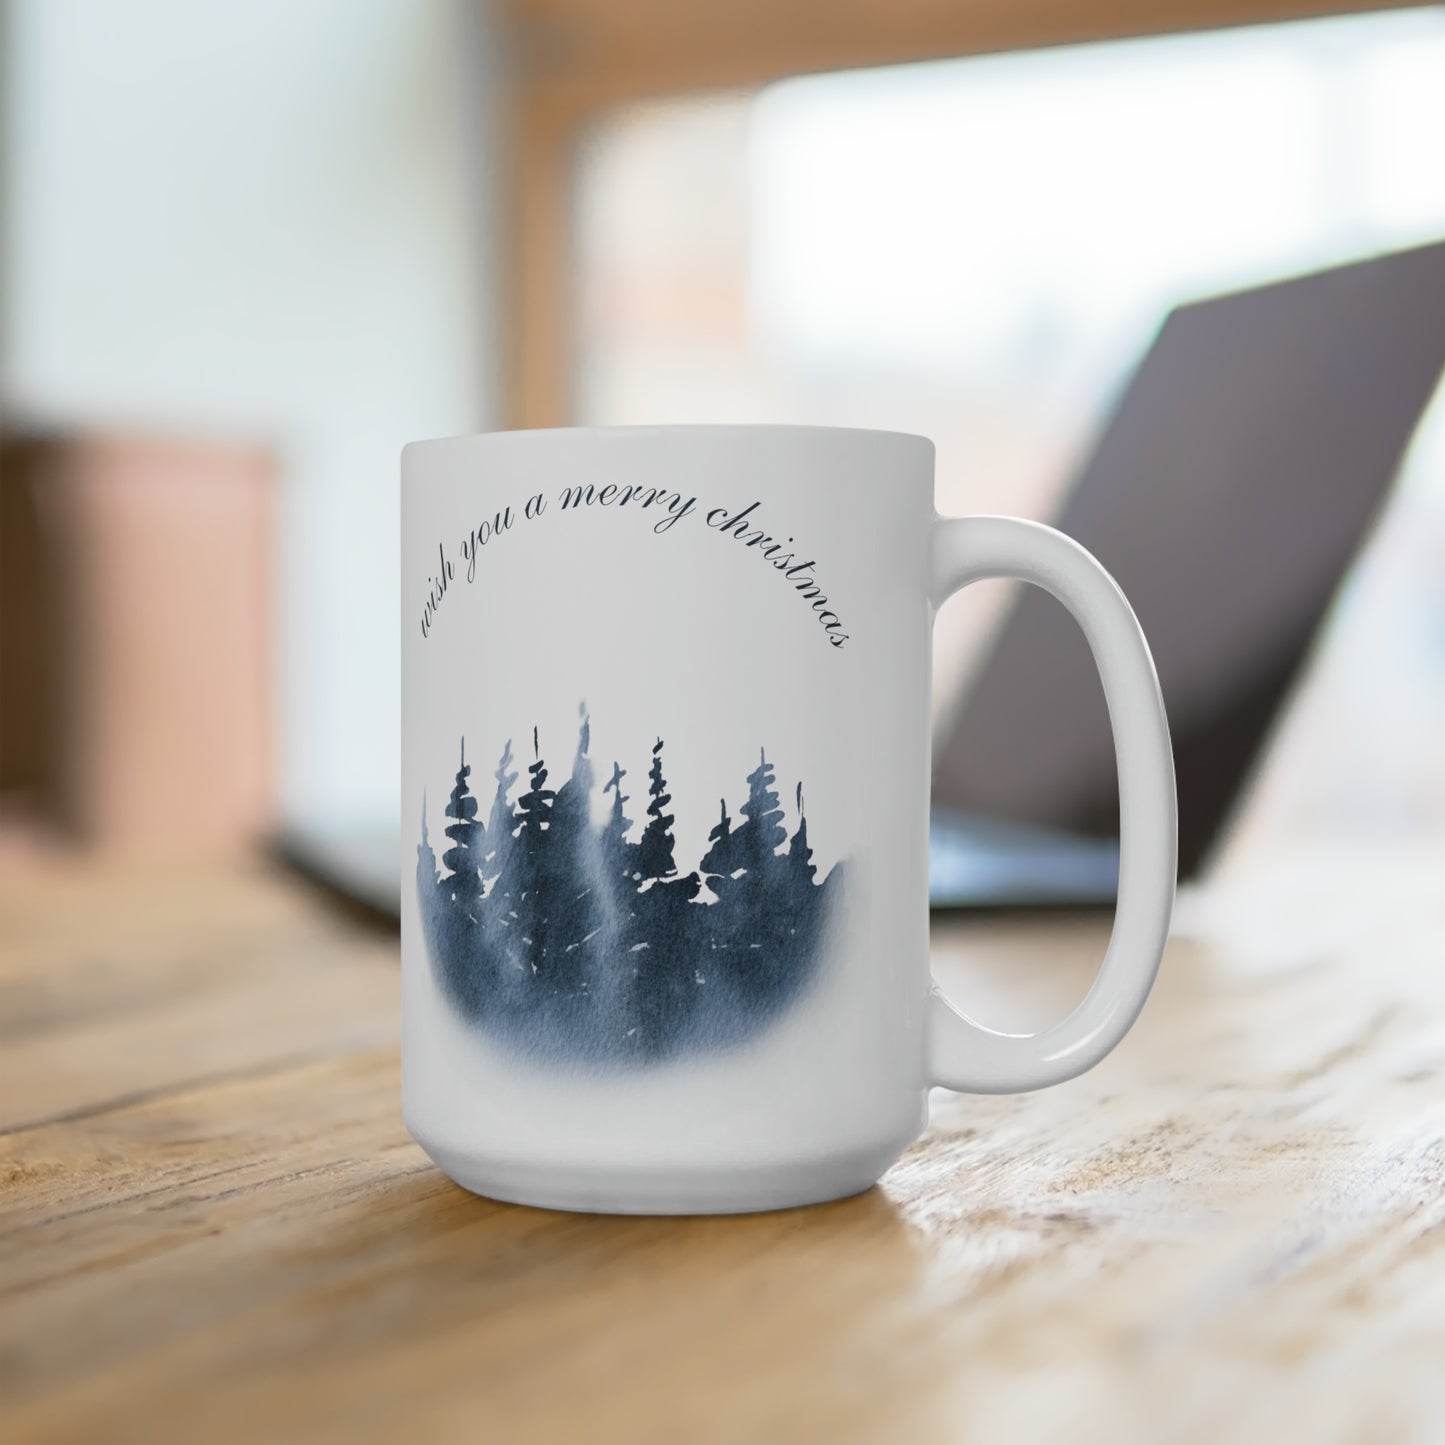 Wish You a Merry Christmas Printed Ceramic Mugs, 15 oz